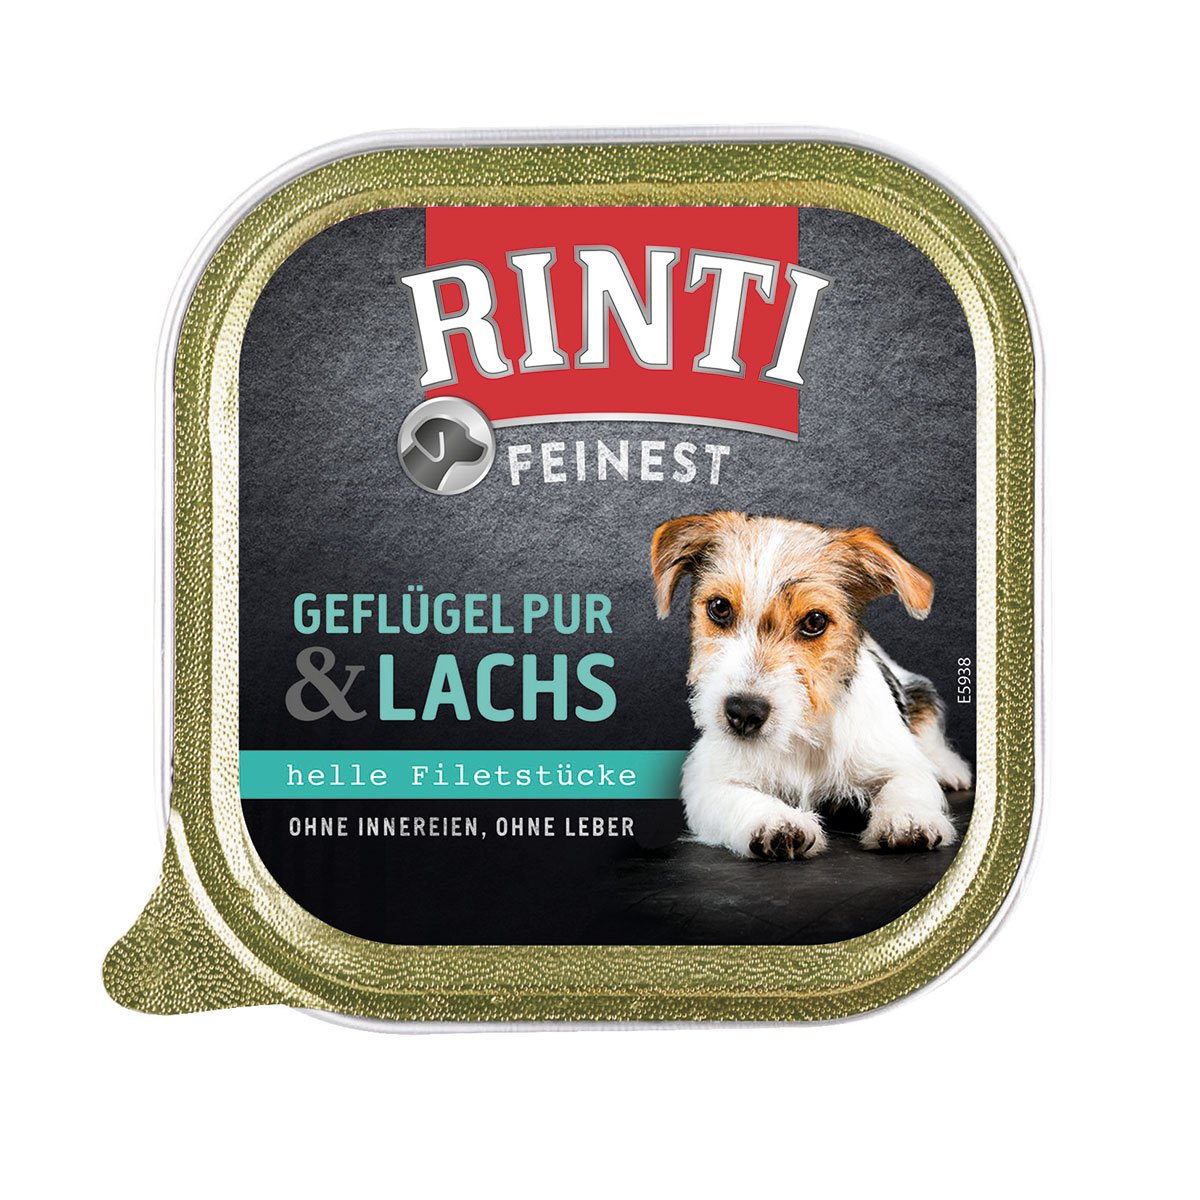 Rinti Feinest Geflügel pur & Lachs 44x150g von Rinti